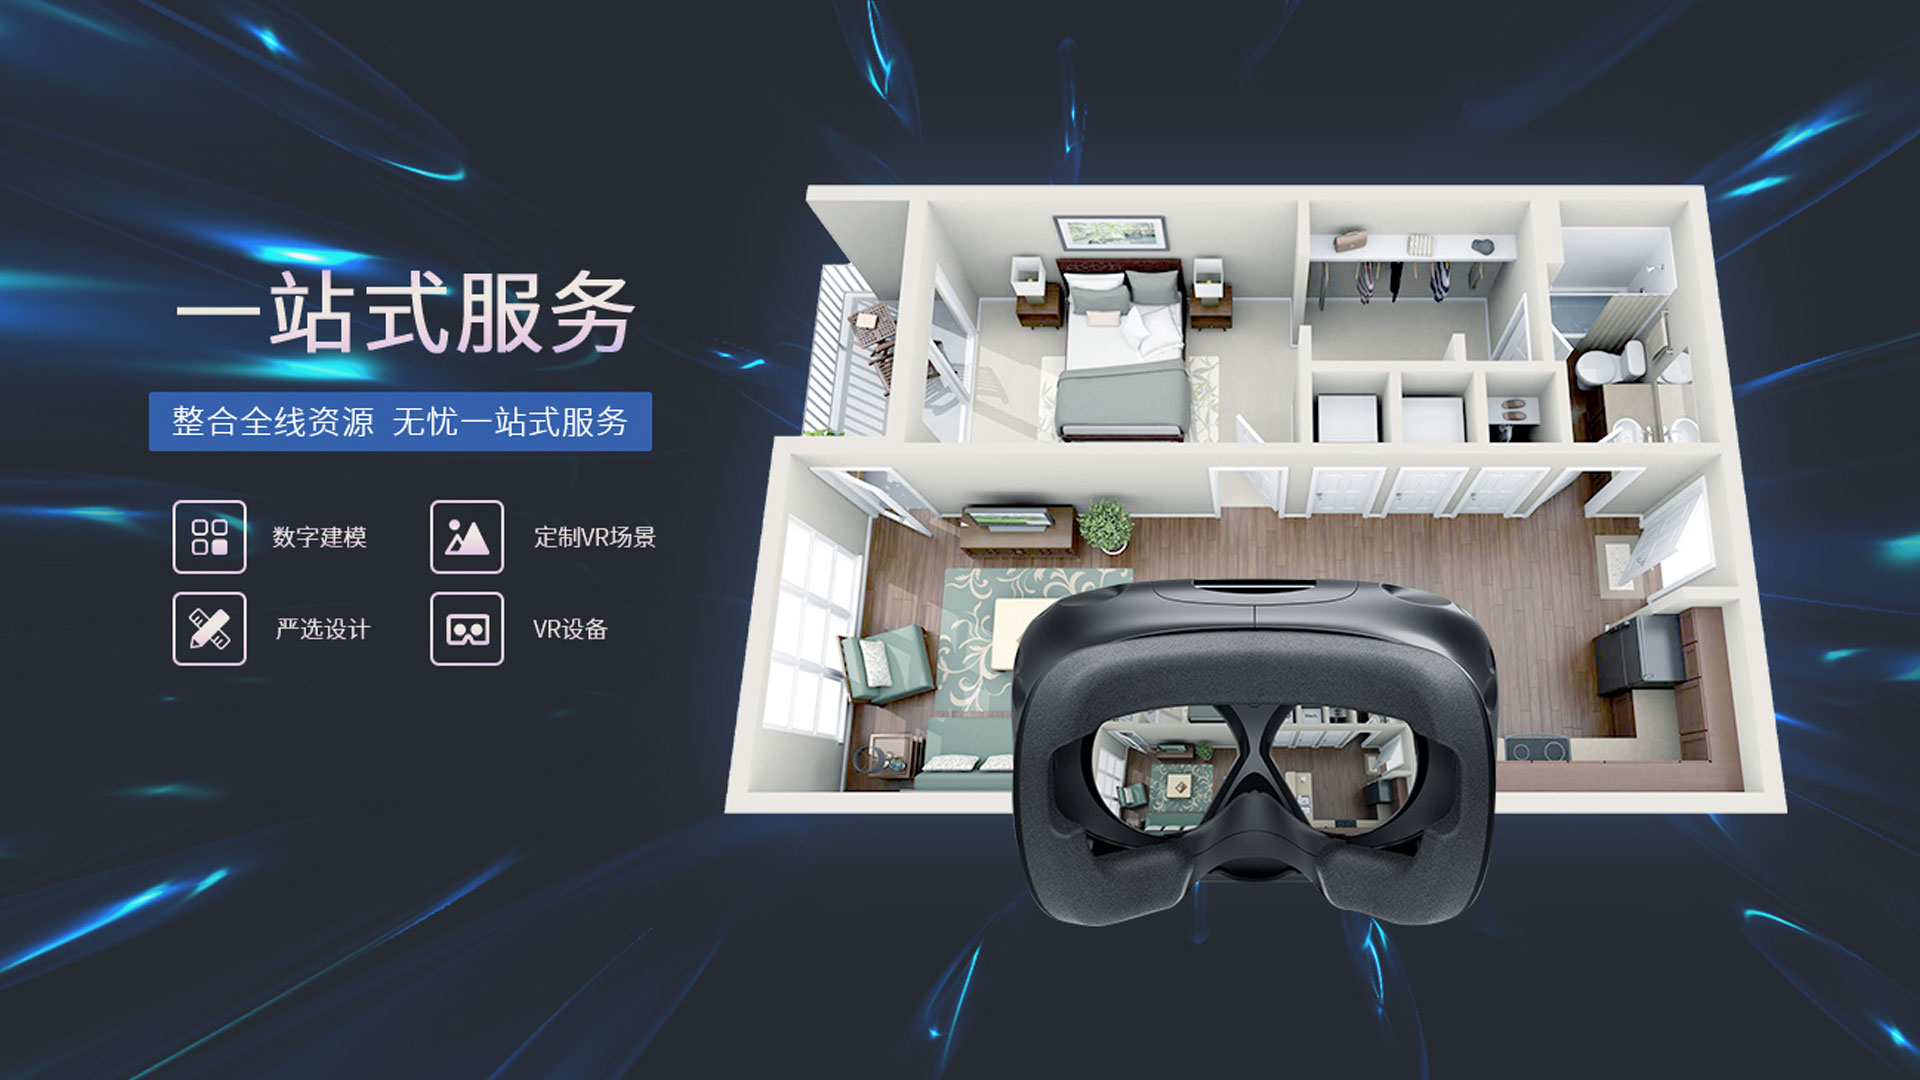 PanguVR virtual reality artificial intelligence China